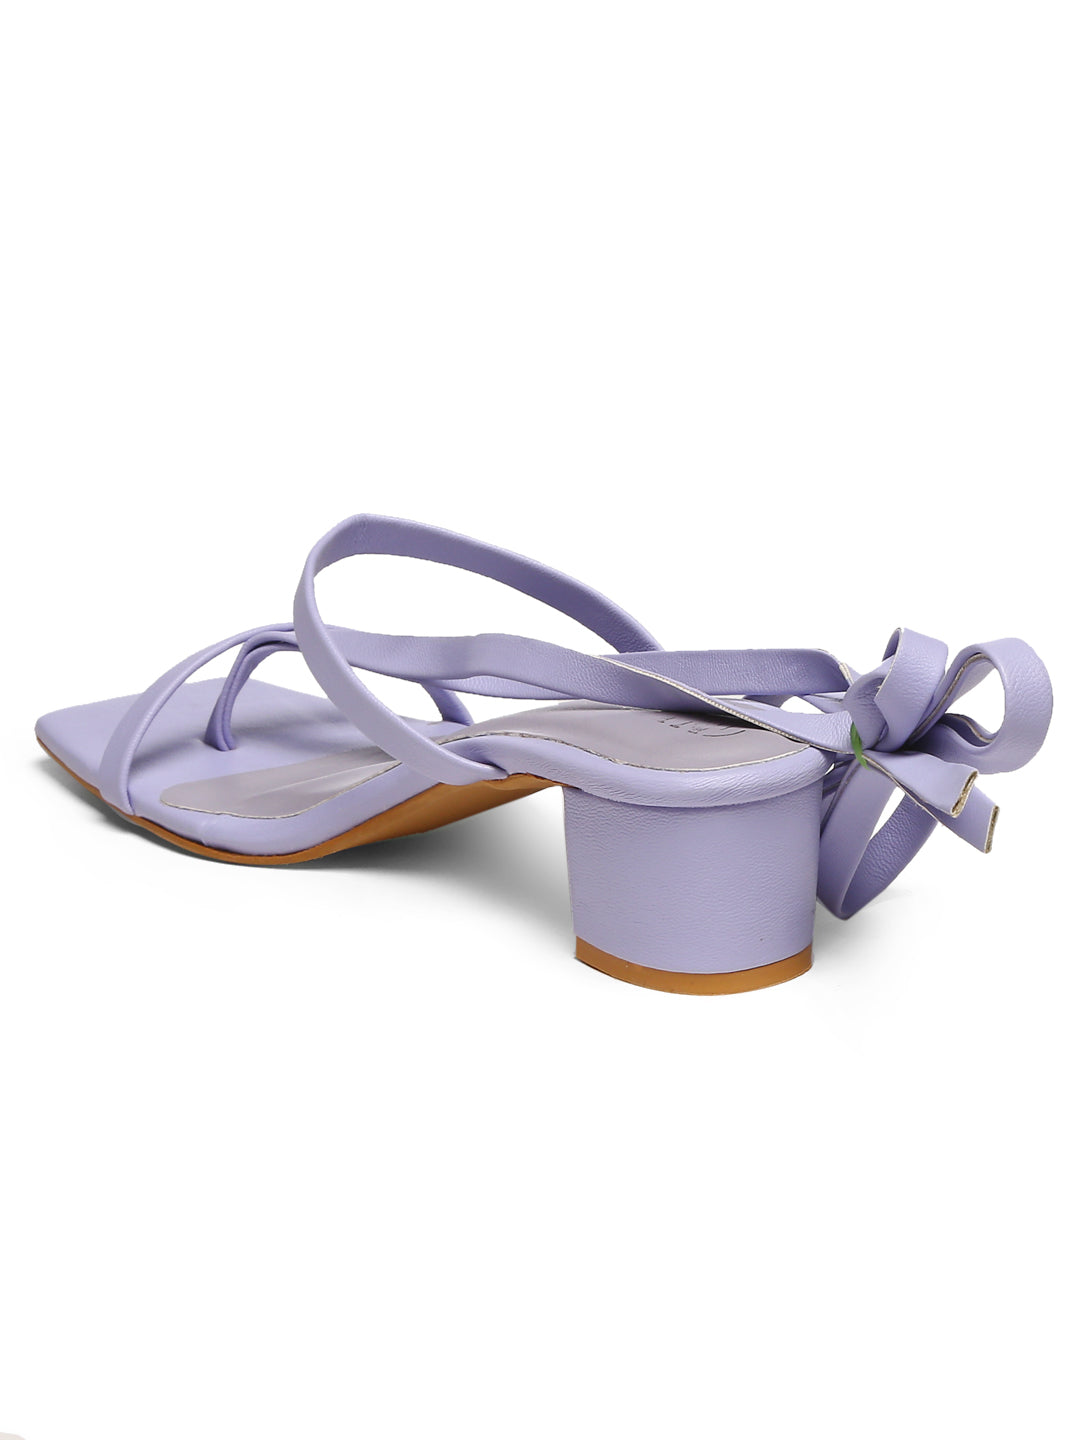 GNIST Lavender Strappy Block Heel Sandal